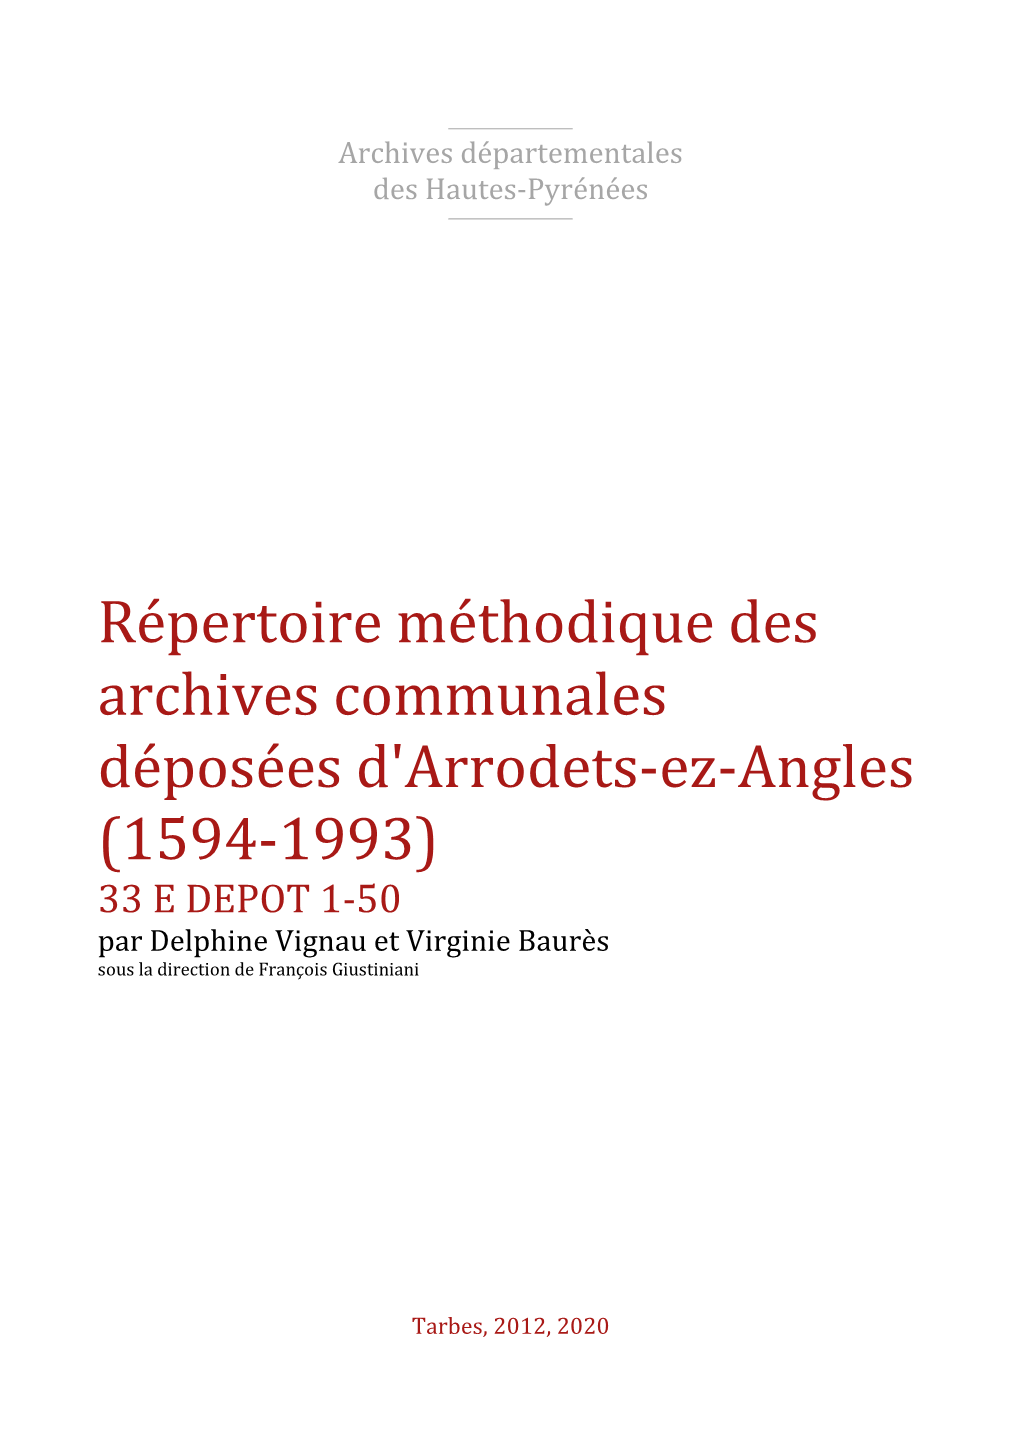 Répertoire Des Archives Déposées D'arrodets-Ez-Angles